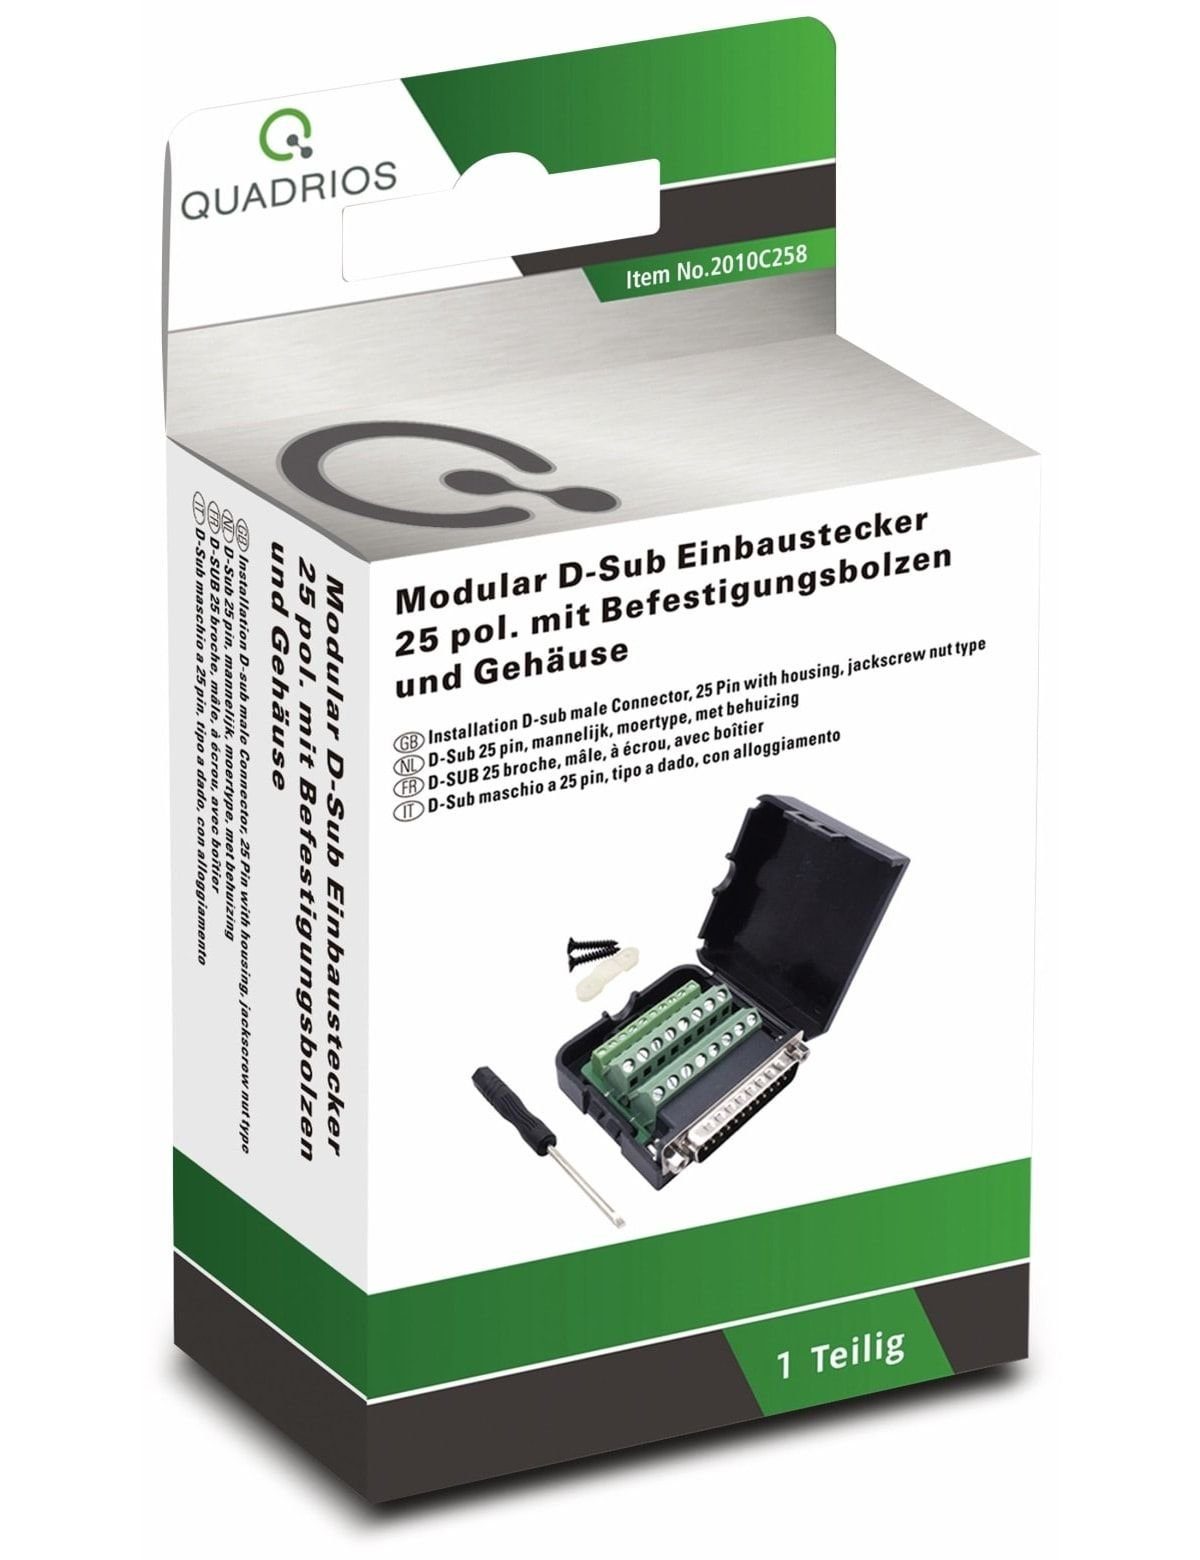 USB-Modular-Set, D-Sub QUADRIOS, Quadrios Klemmen 2010C258,